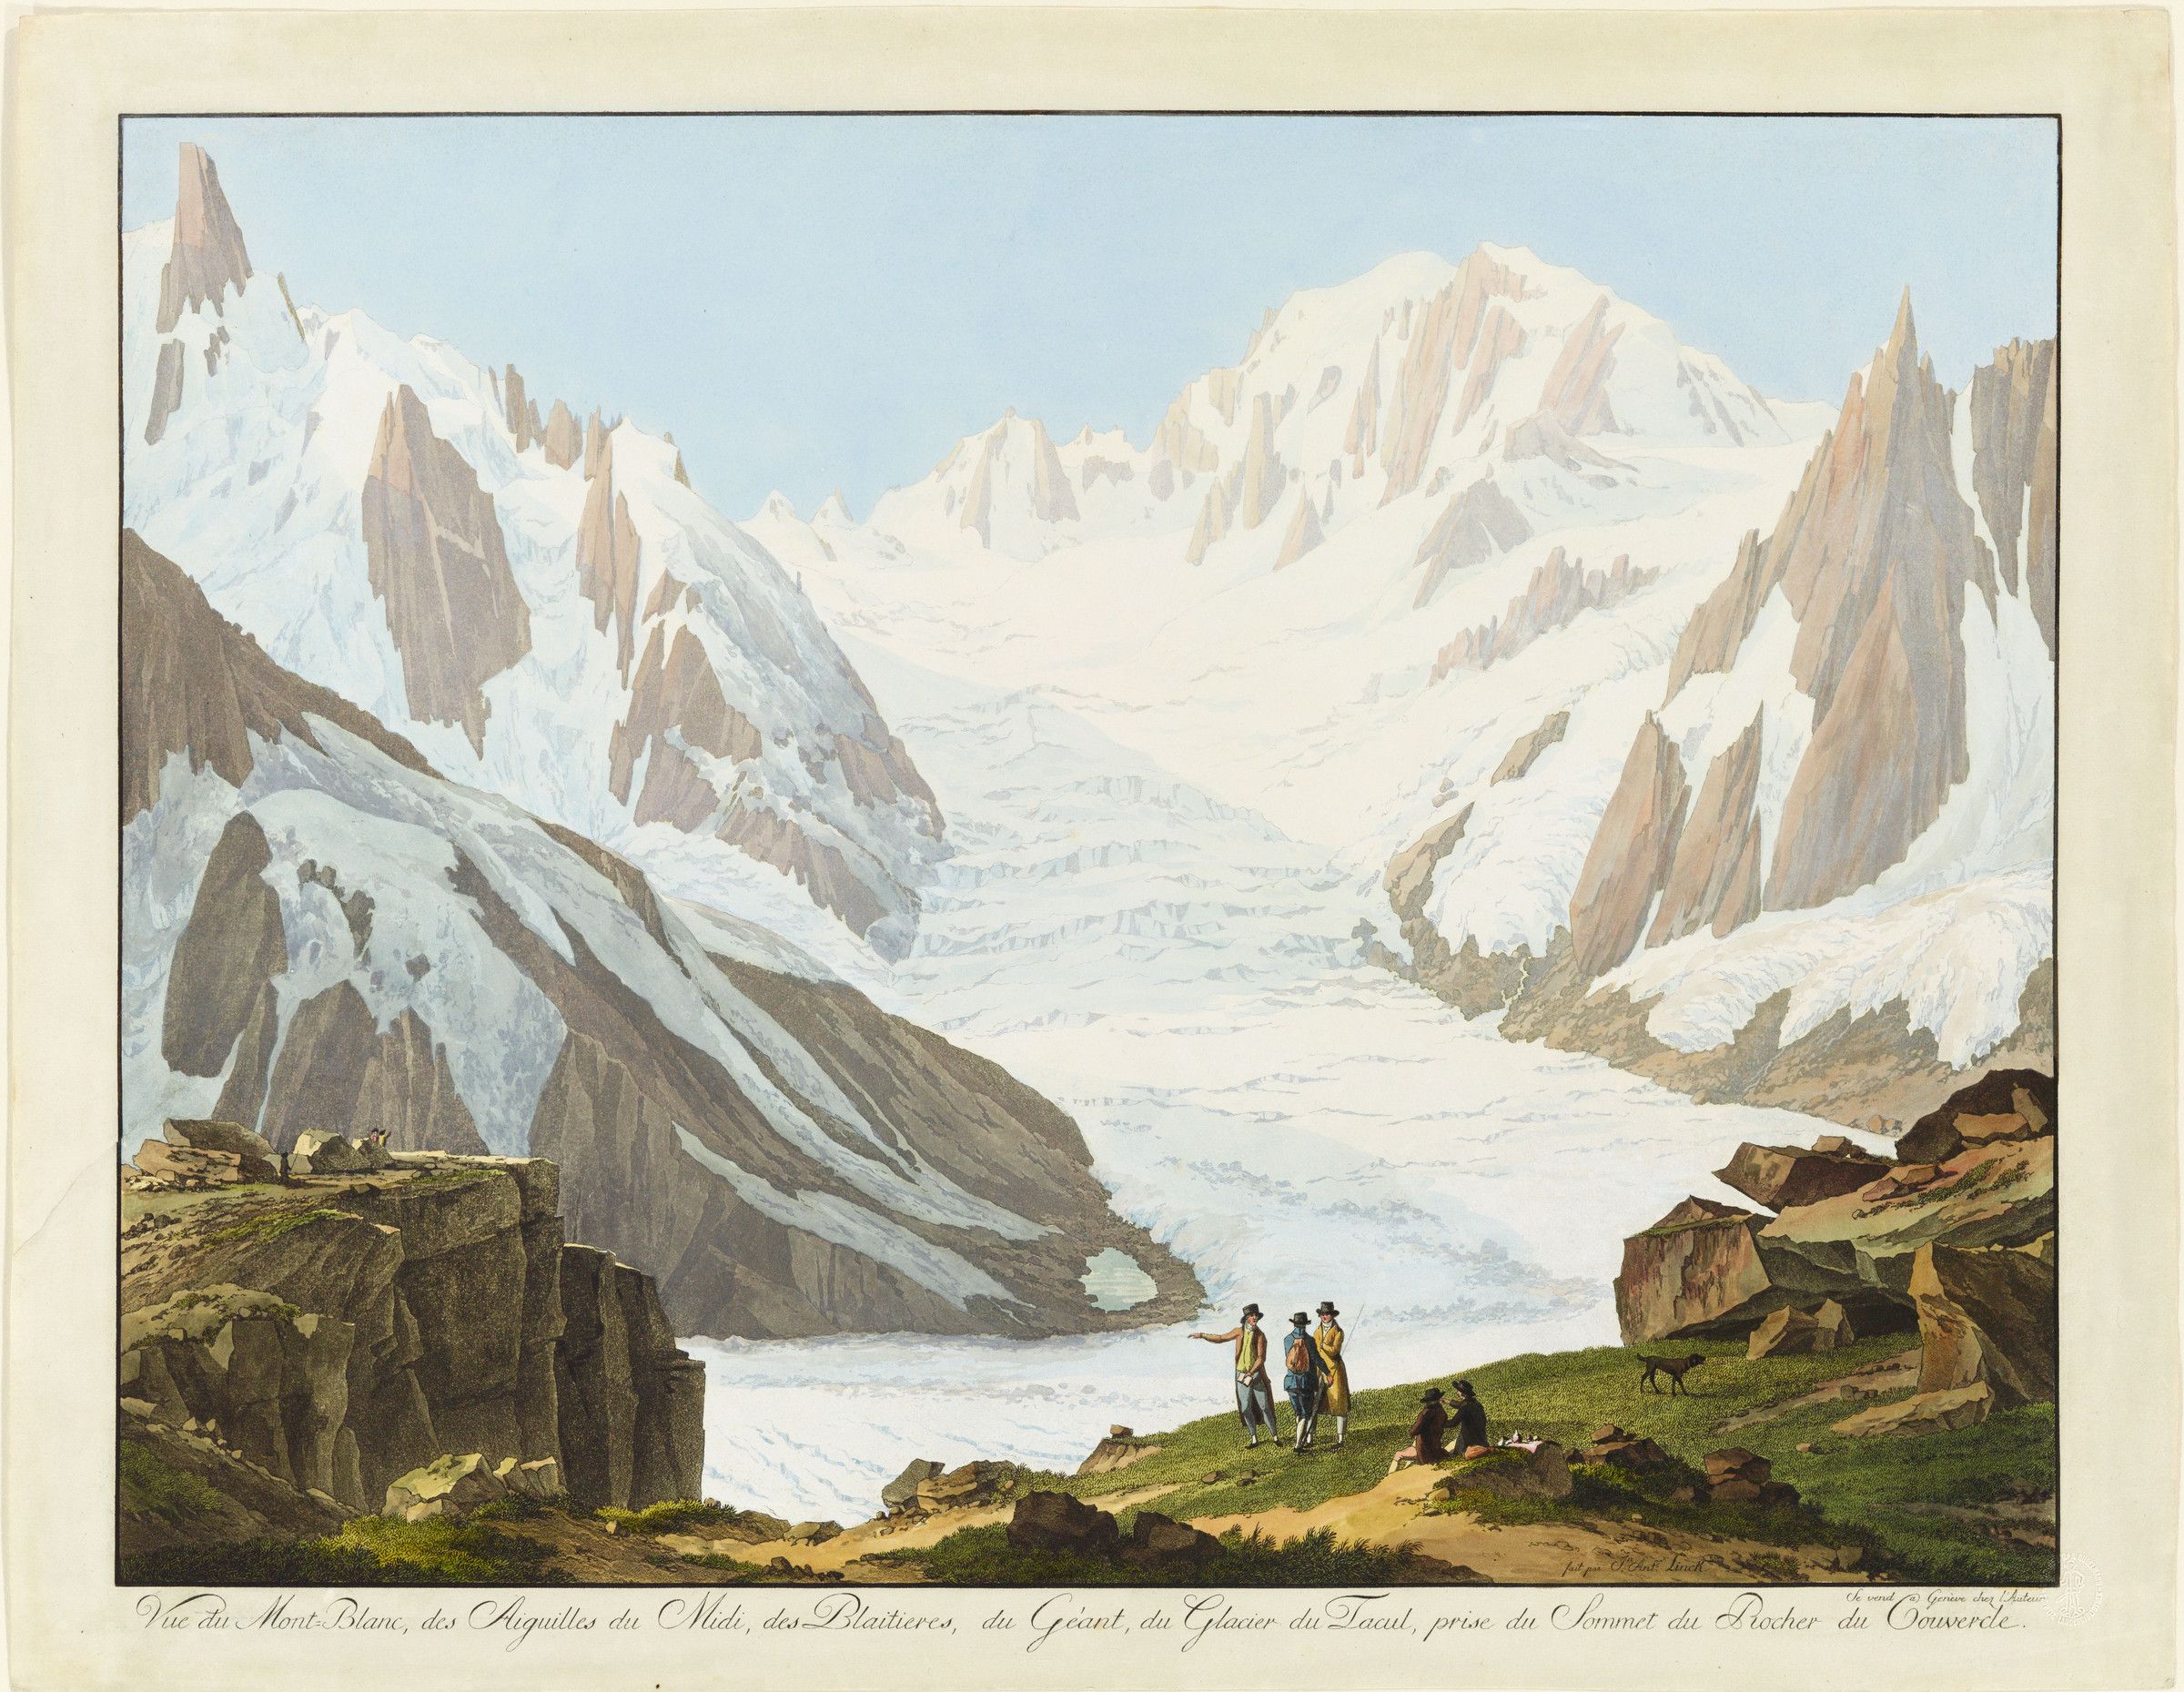 Glacier du Tacul von Le Couvercle aus gesehen.